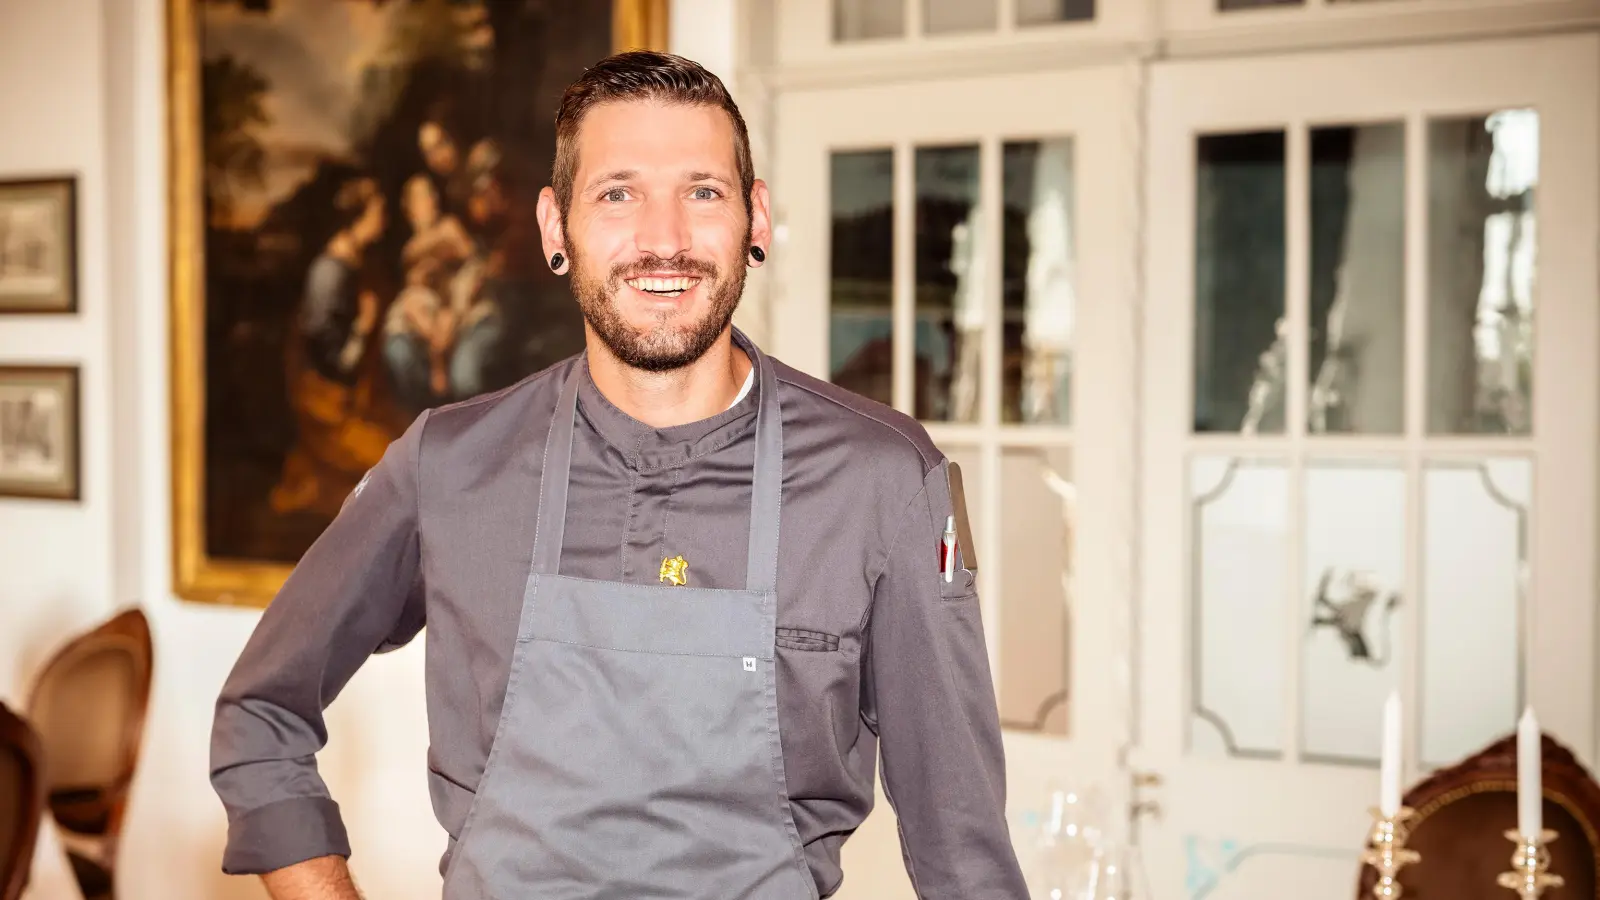 Spitzenkoch Steffen Szabo vom Restaurant „Le Frankenberg“ hat den begehrten Michelin-Stern errungen. Er darf diesen nun für ein Jahr am Gourmet-Lokal von Schloss Frankenberg anbringen. (Foto: Dominic Heidl)